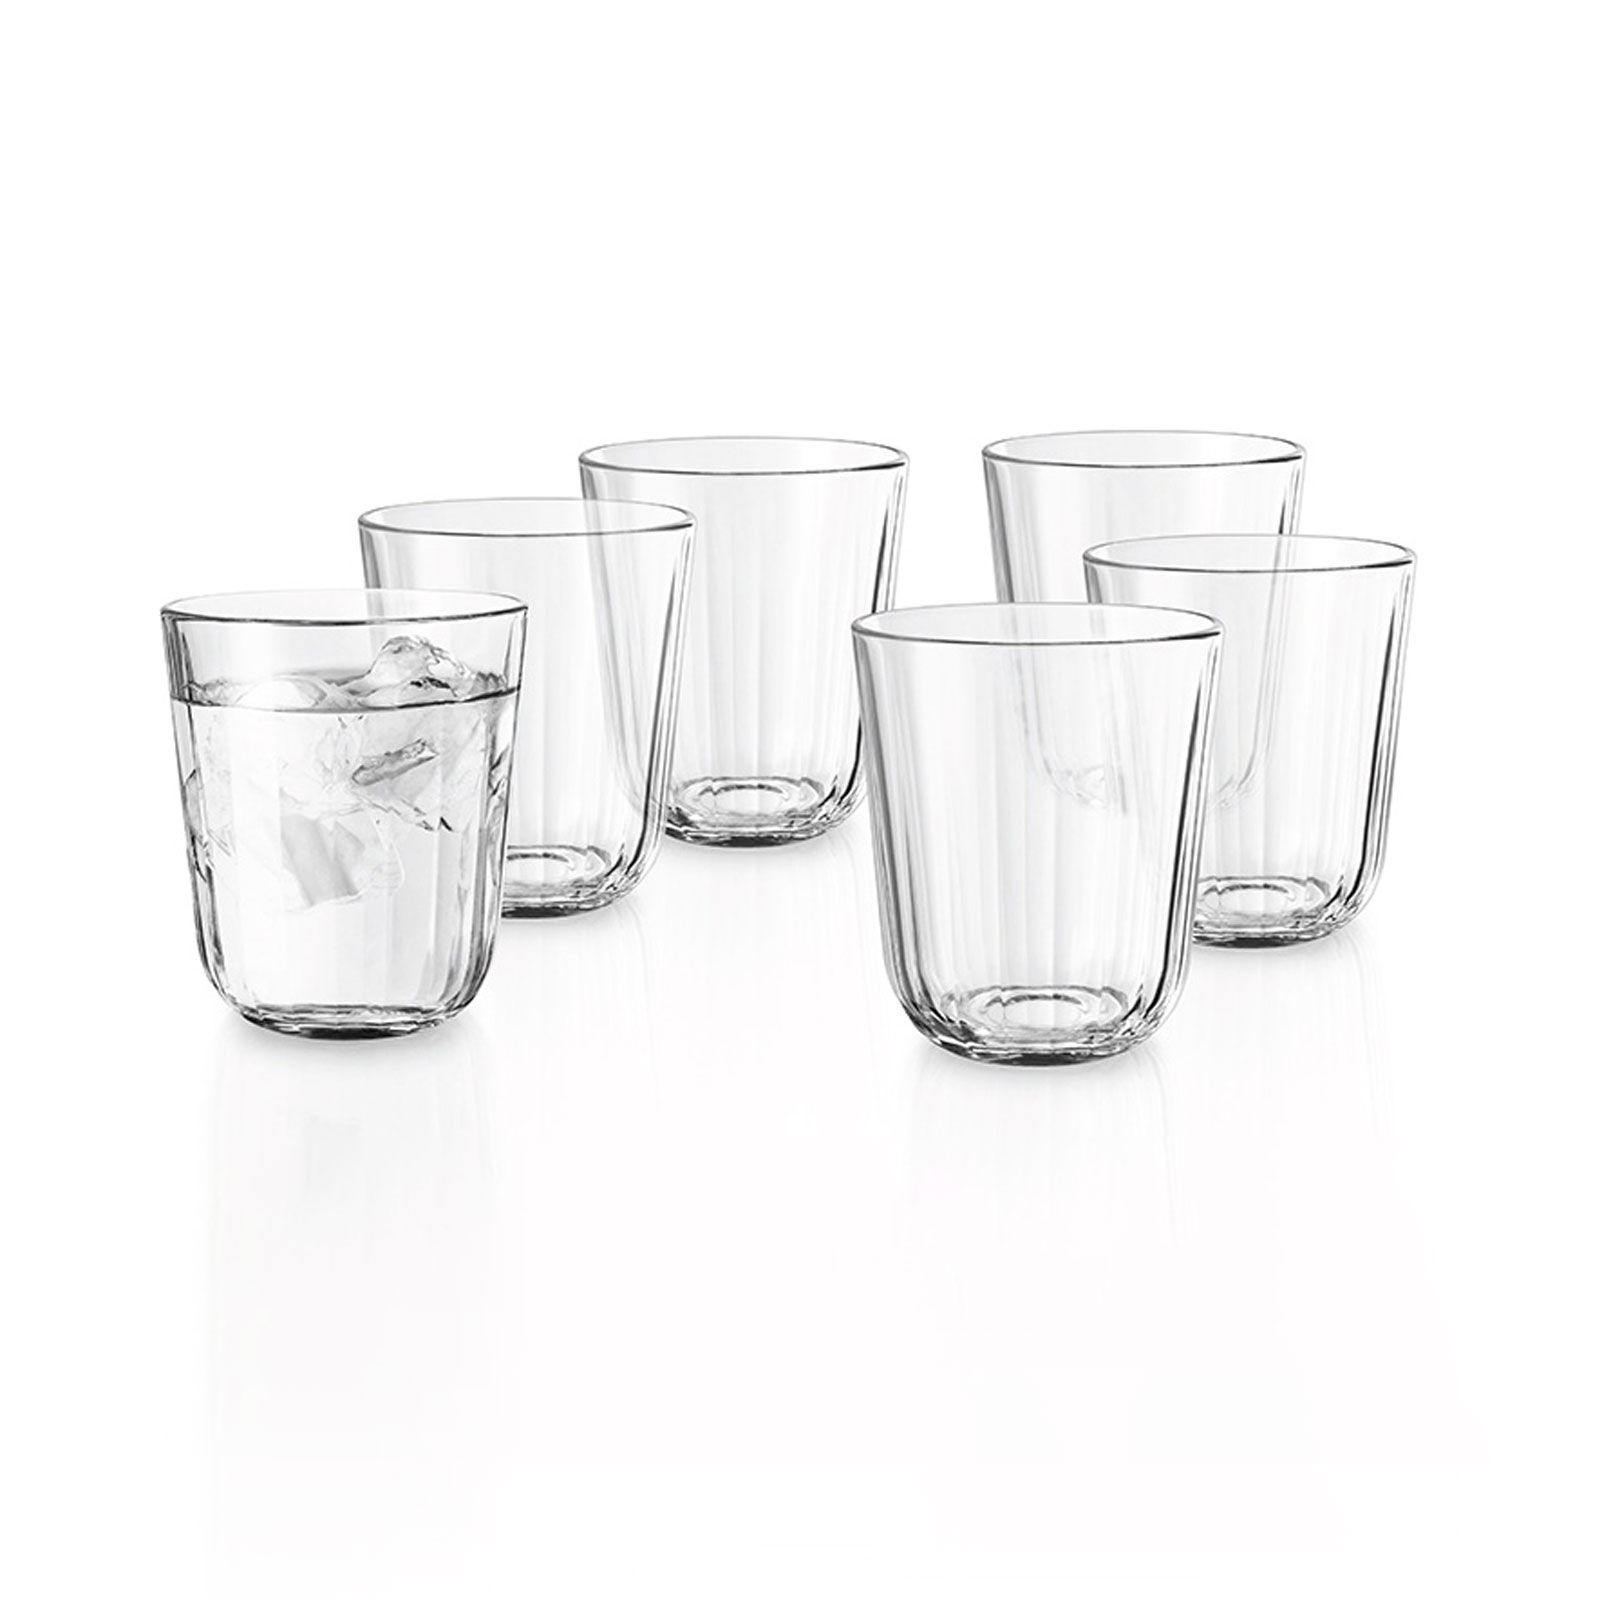 Eva Solo Trinkglas 0,27ltr. 6er Set clear